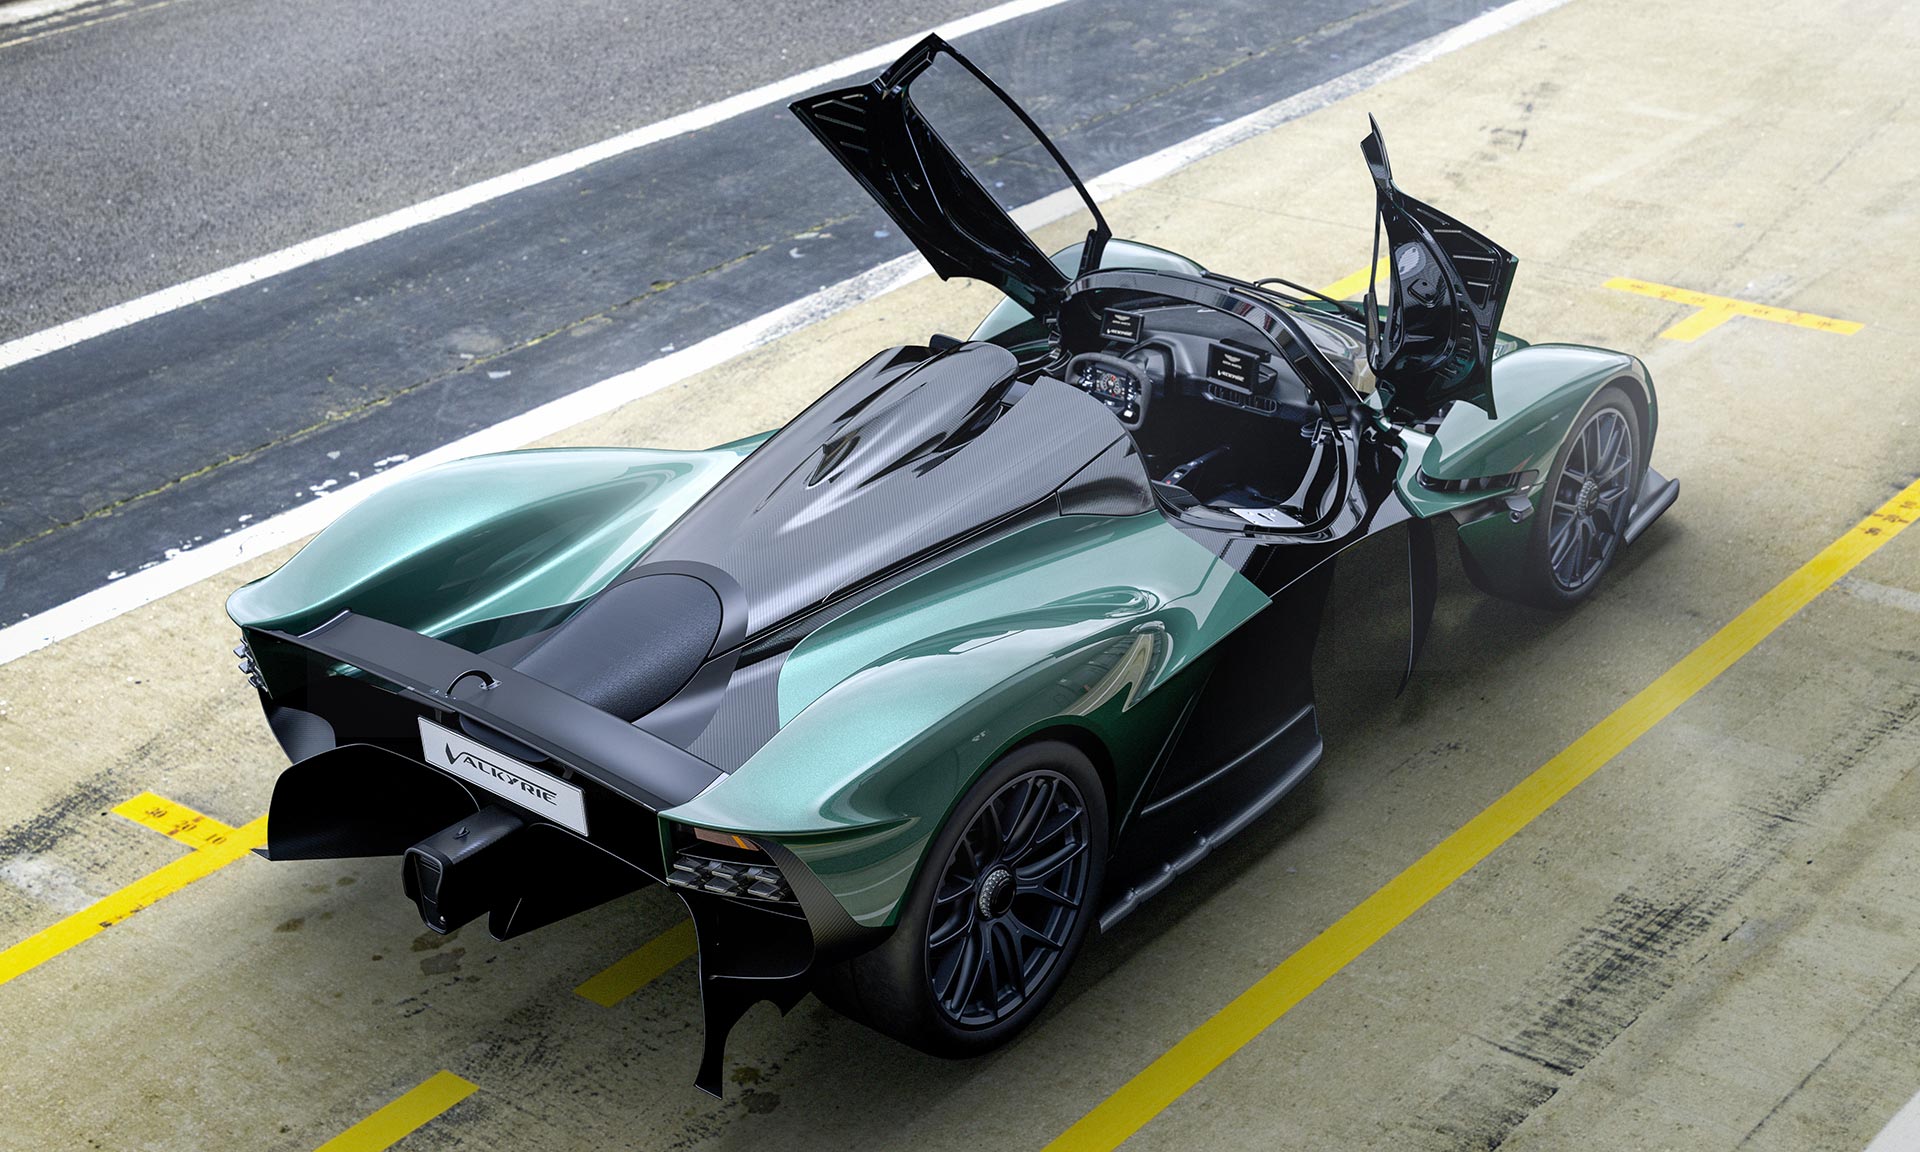 Aston Martin ukázal otevřenou verzi extrémního sporťáku Valkyrie Spider